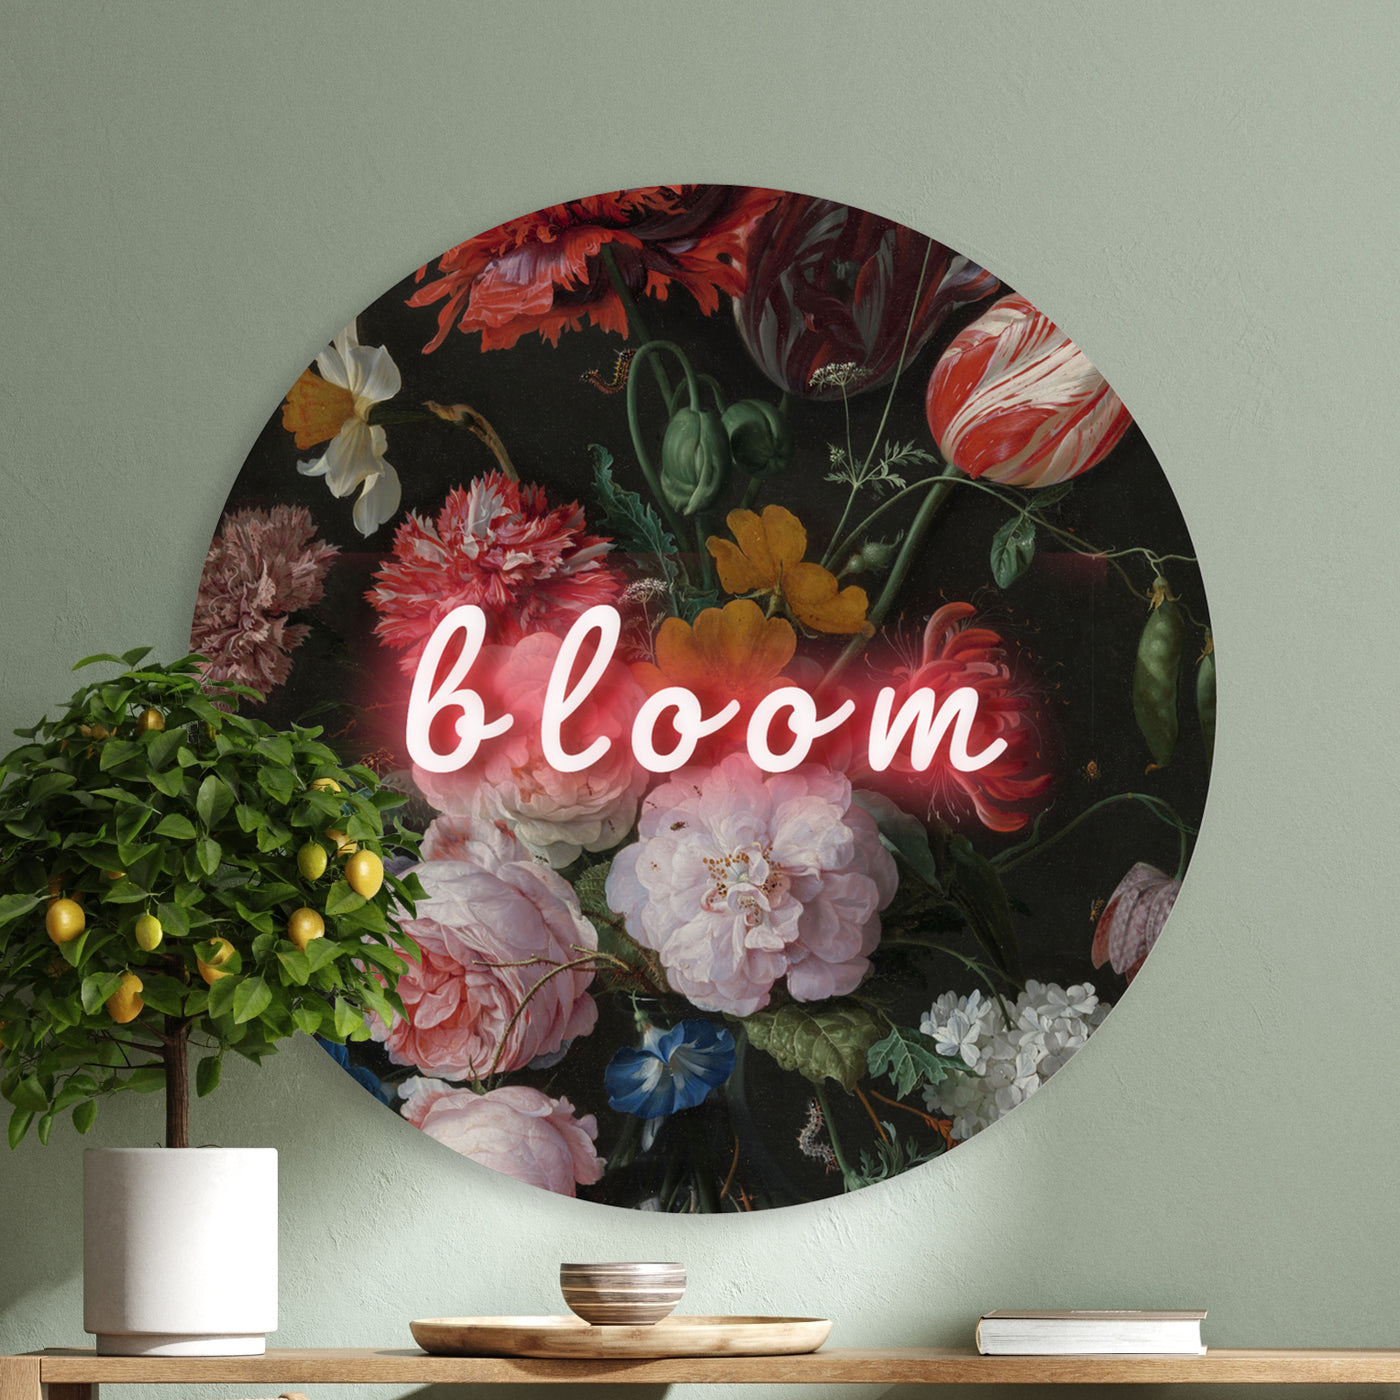 Bloom - Marja van den Hurk